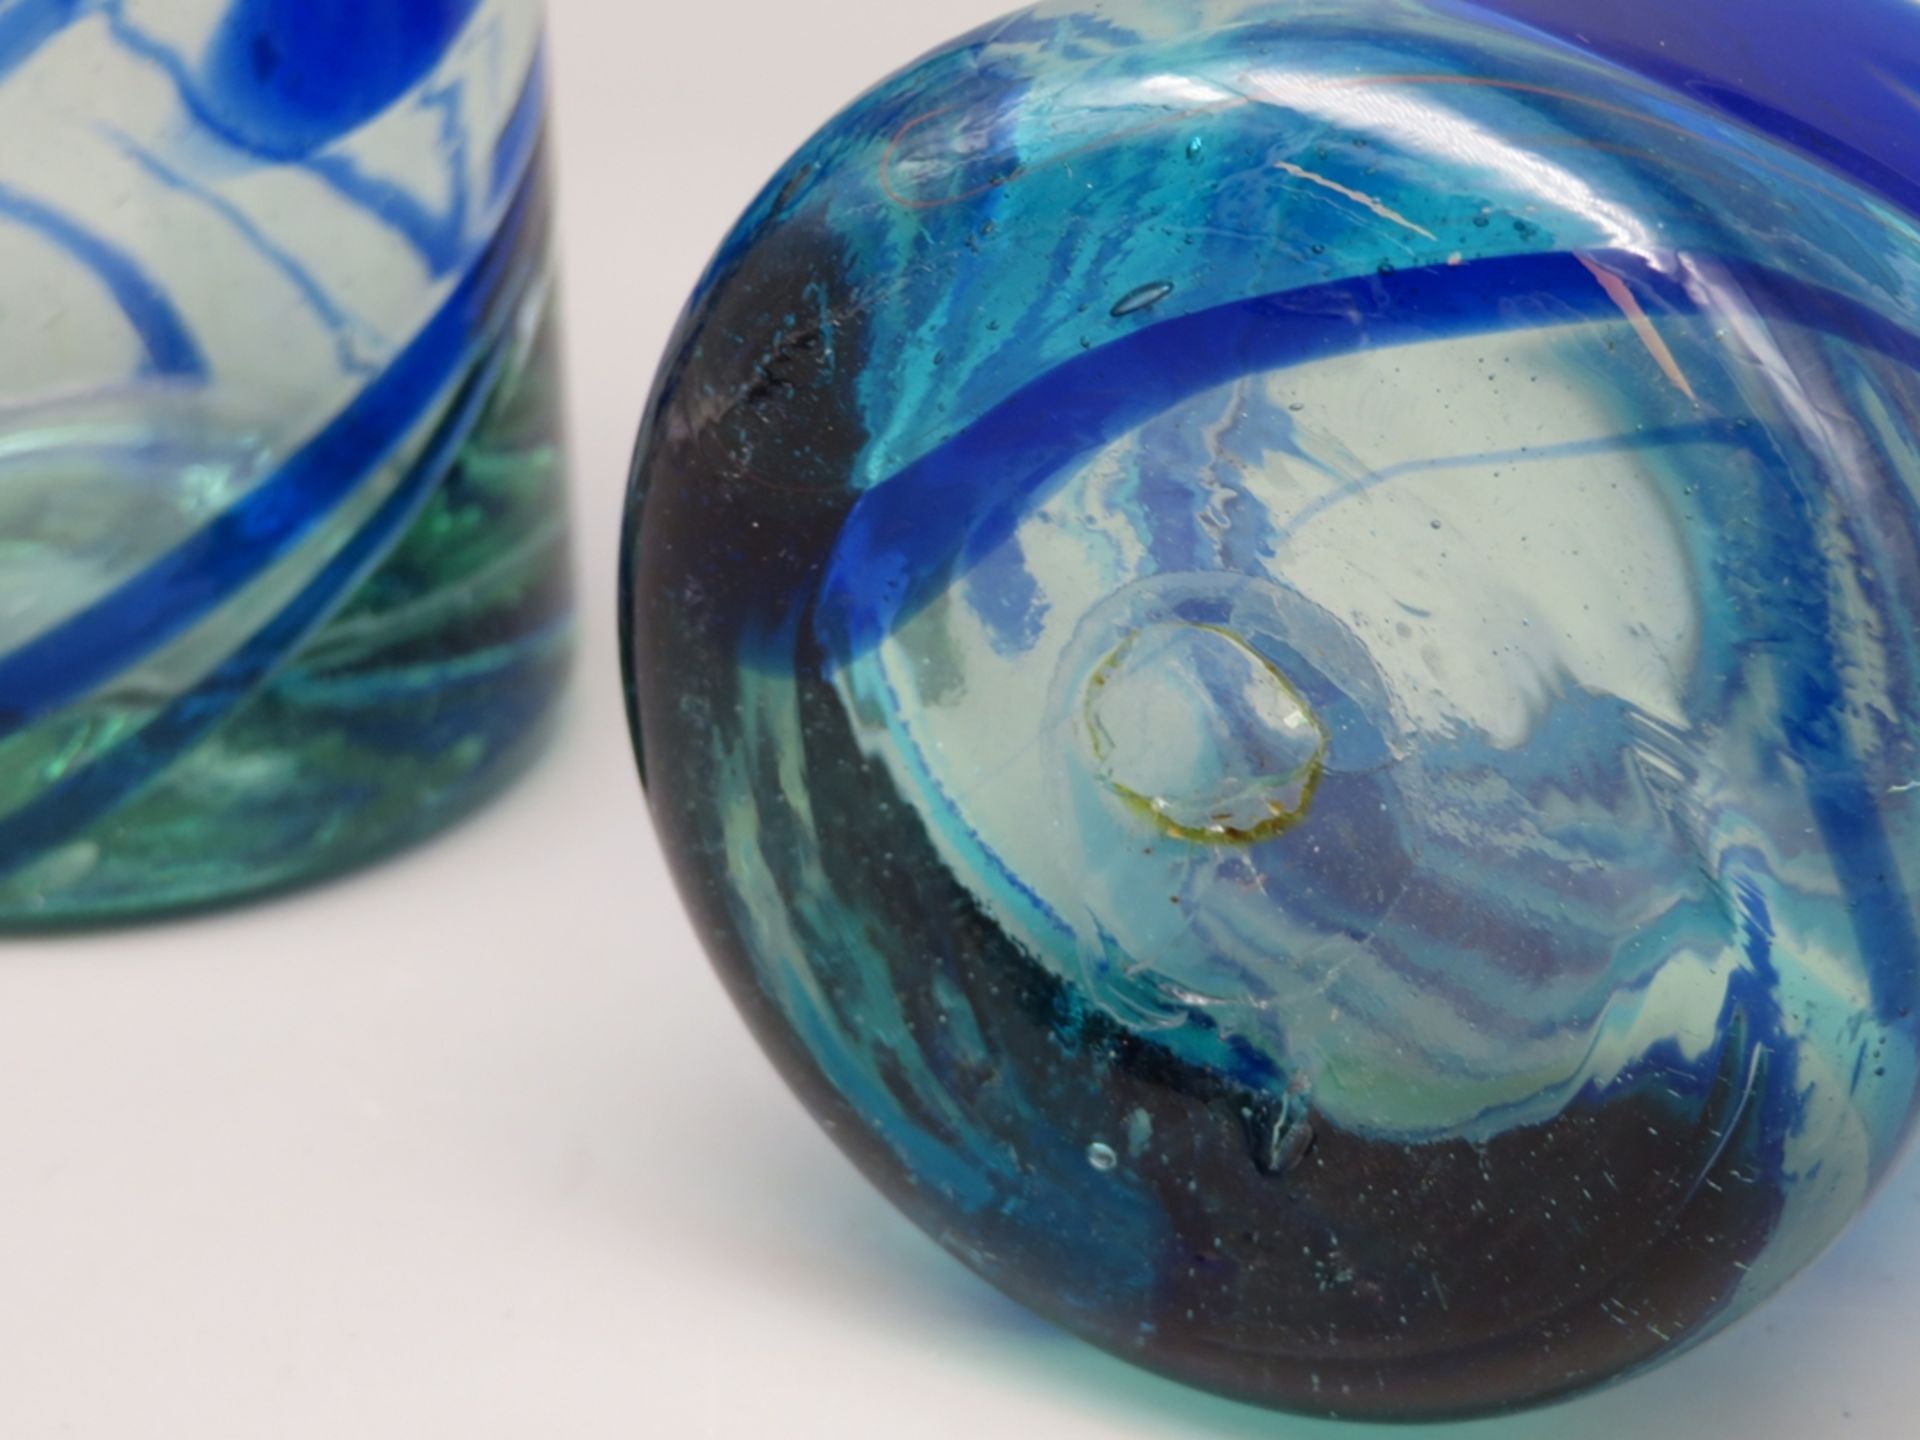 2 Designer Gläser, farbloses Glas mit blau-grünlichen, spiralförmigen Einschmelzungen, mundgeblasen - Bild 2 aus 2